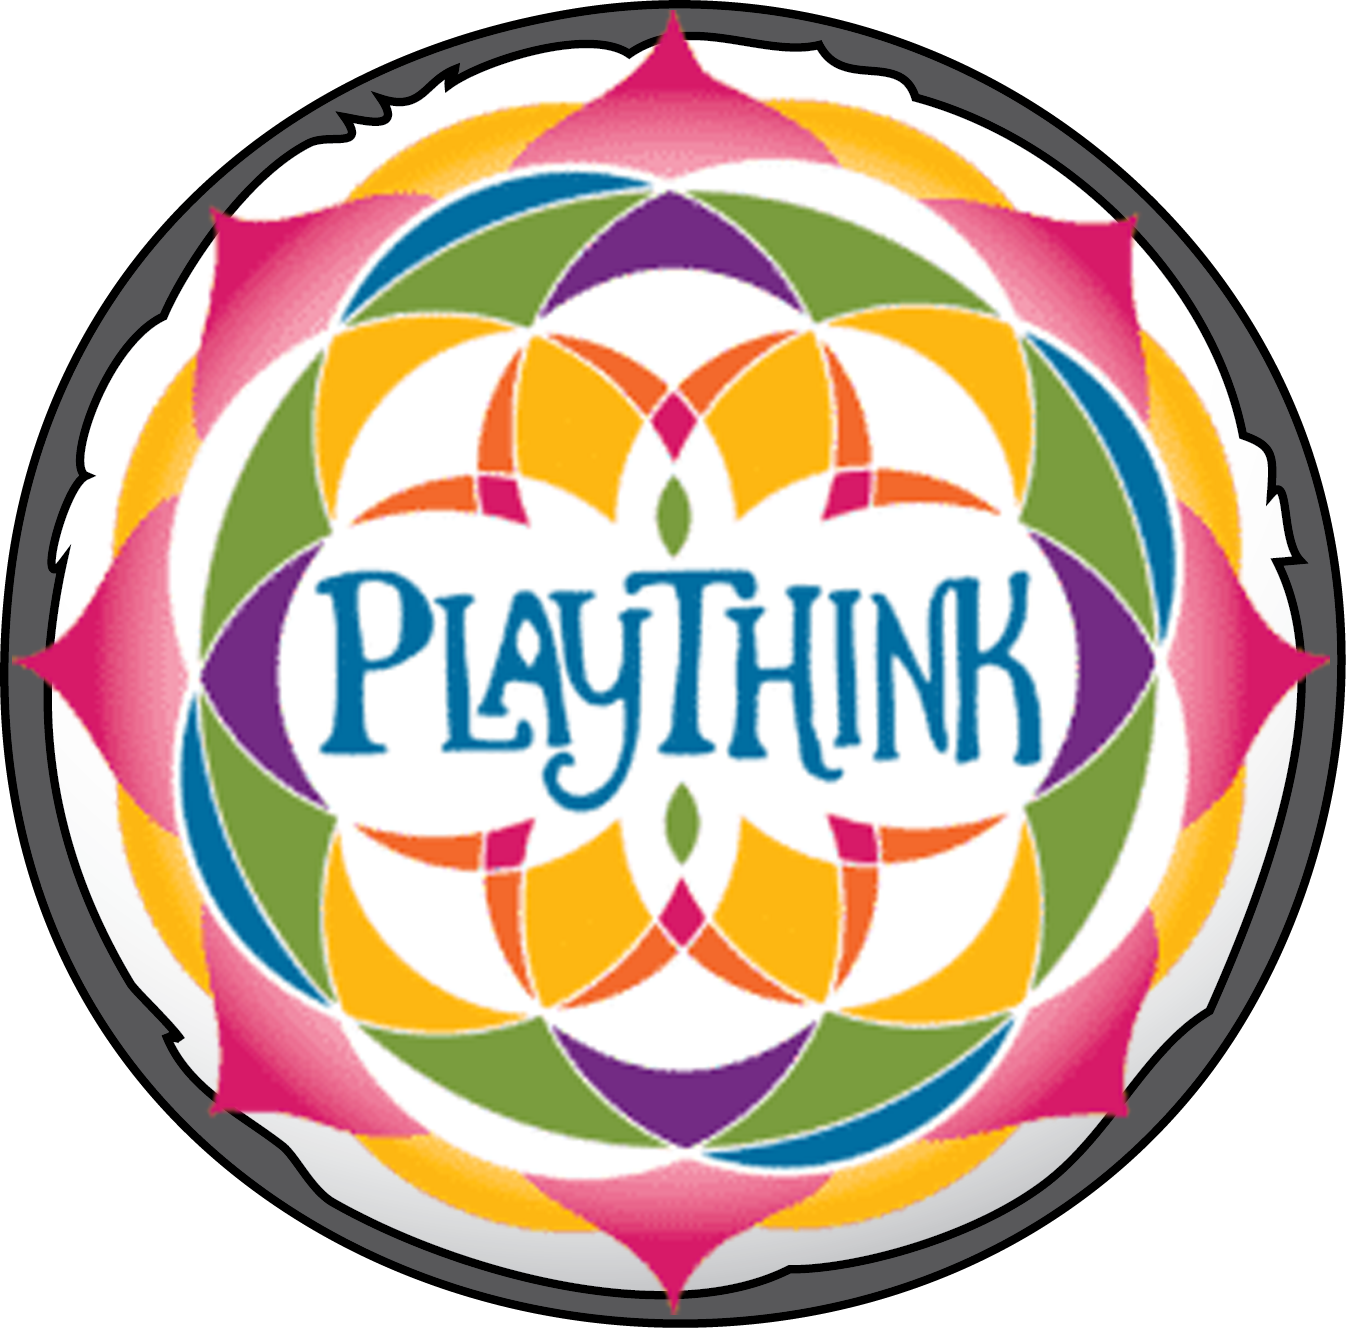 Playthink logo